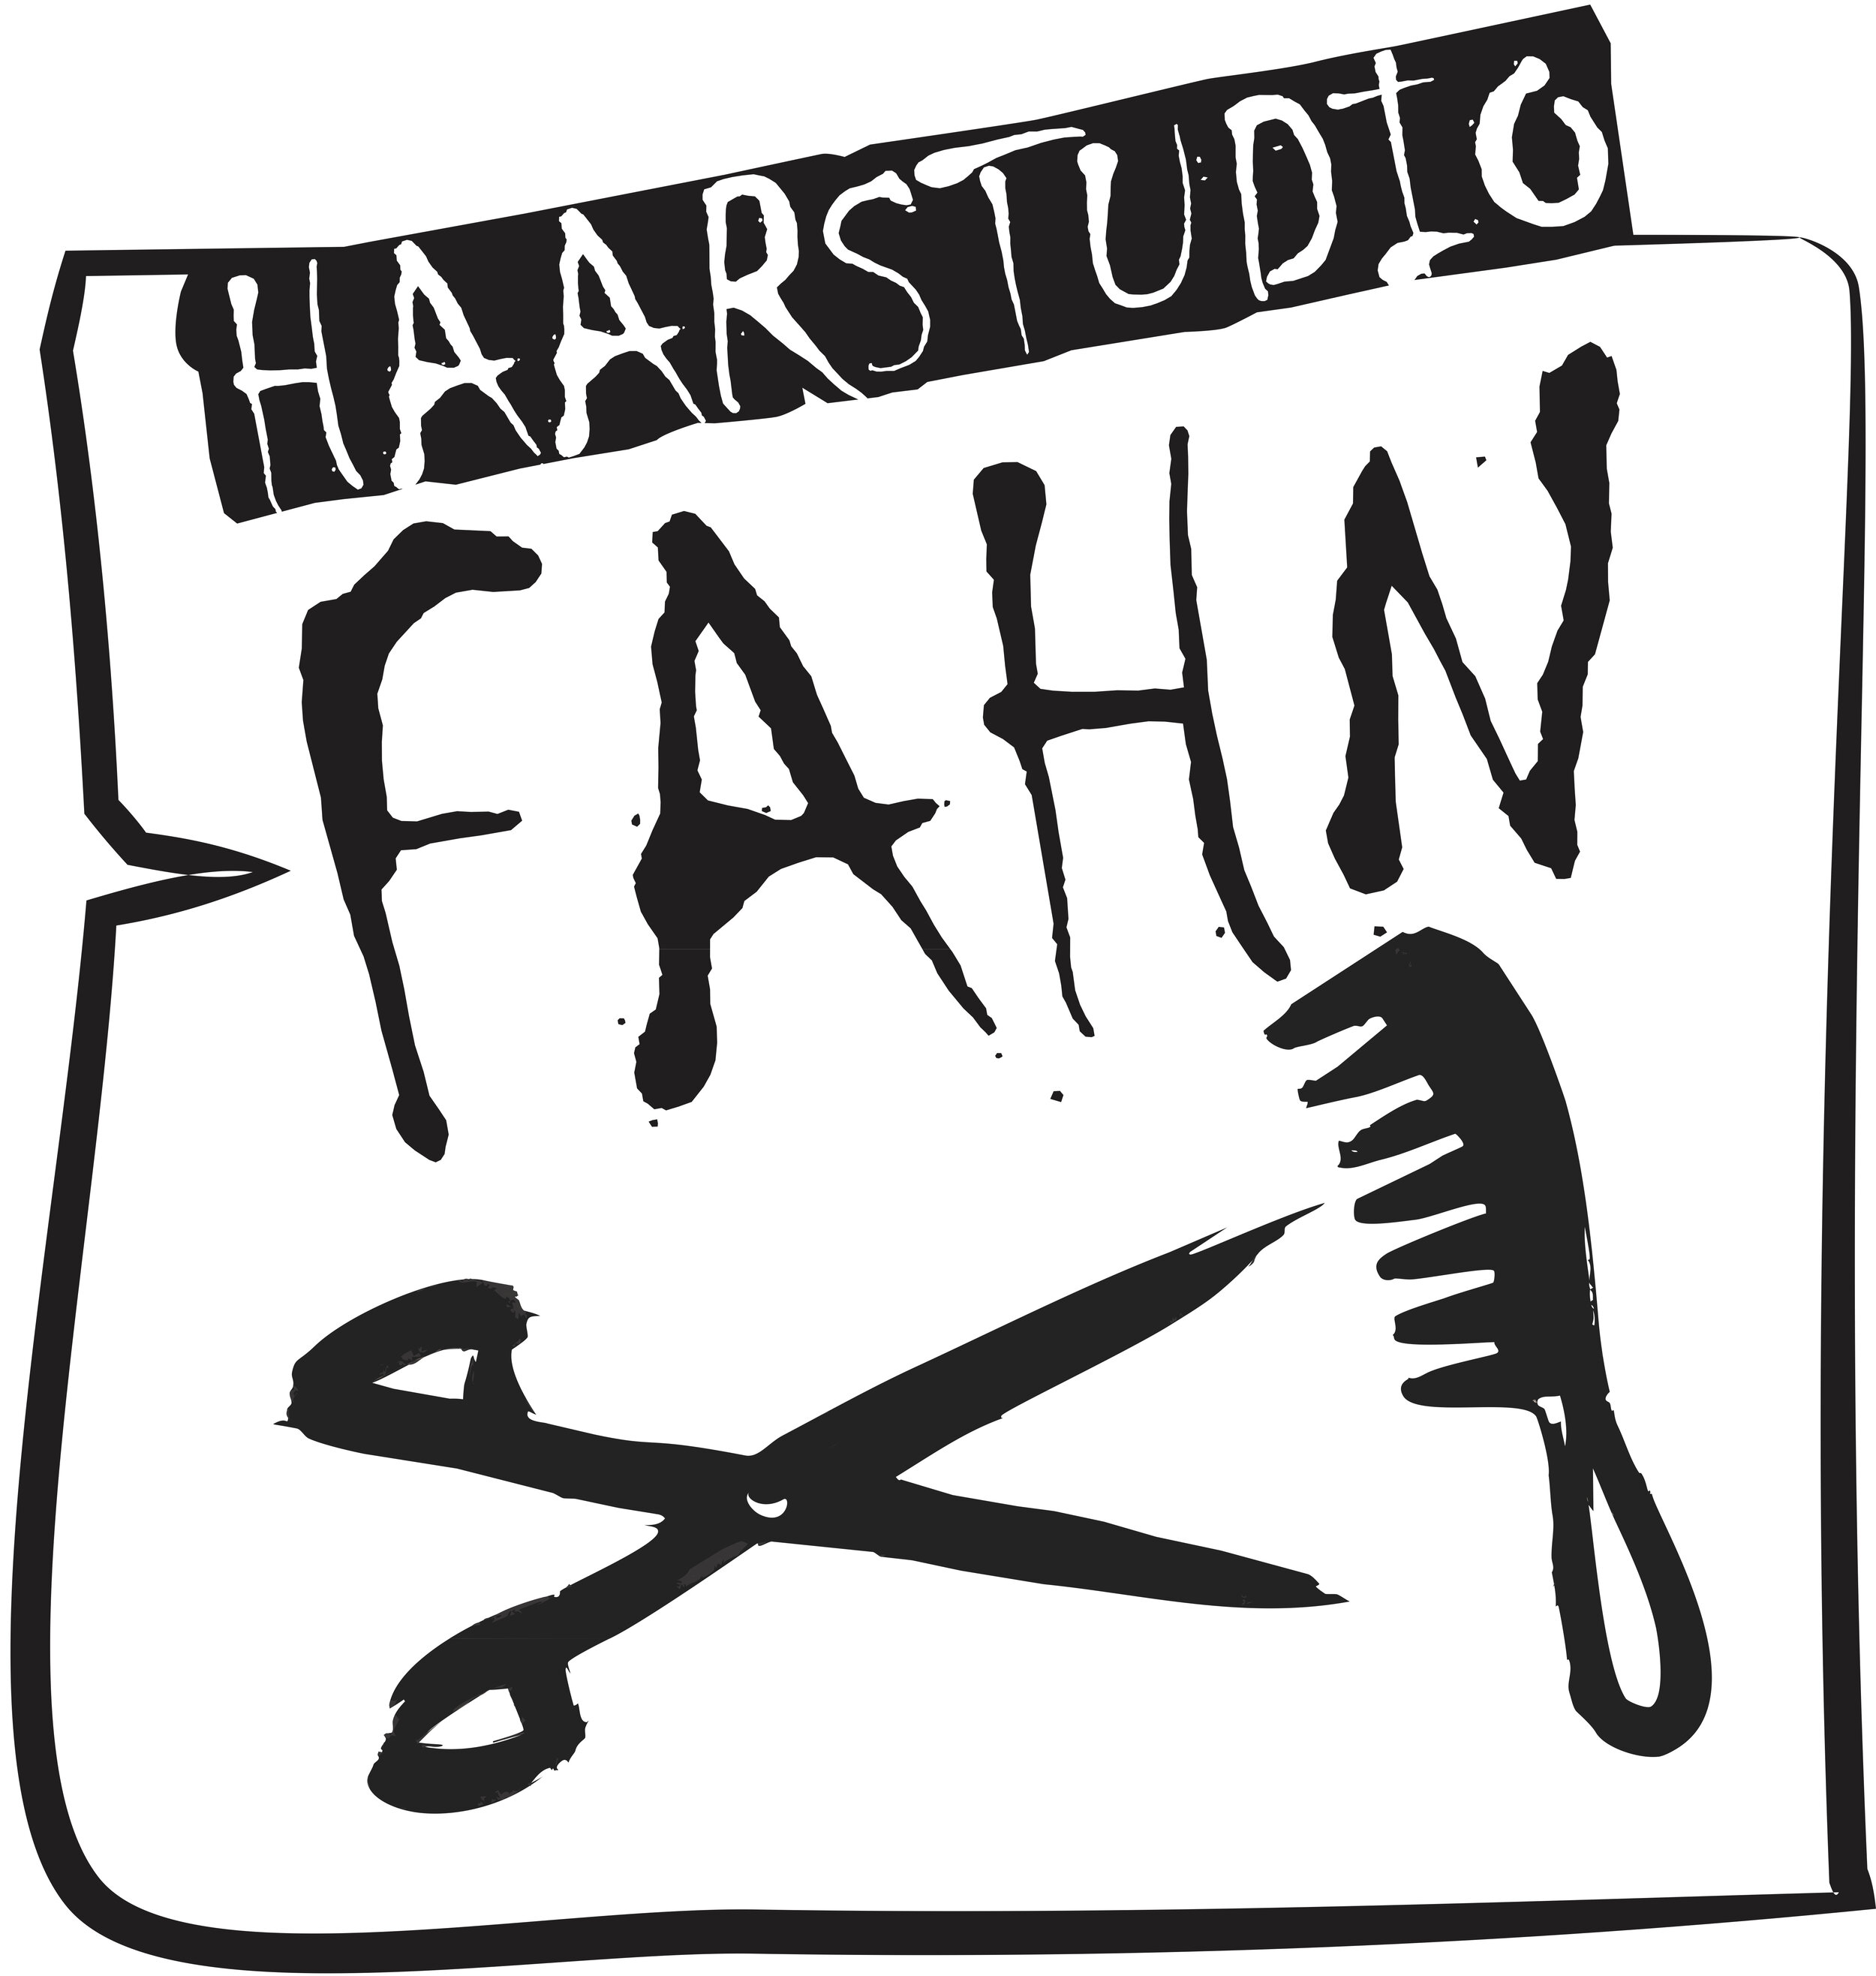 Haarstudio Fahn